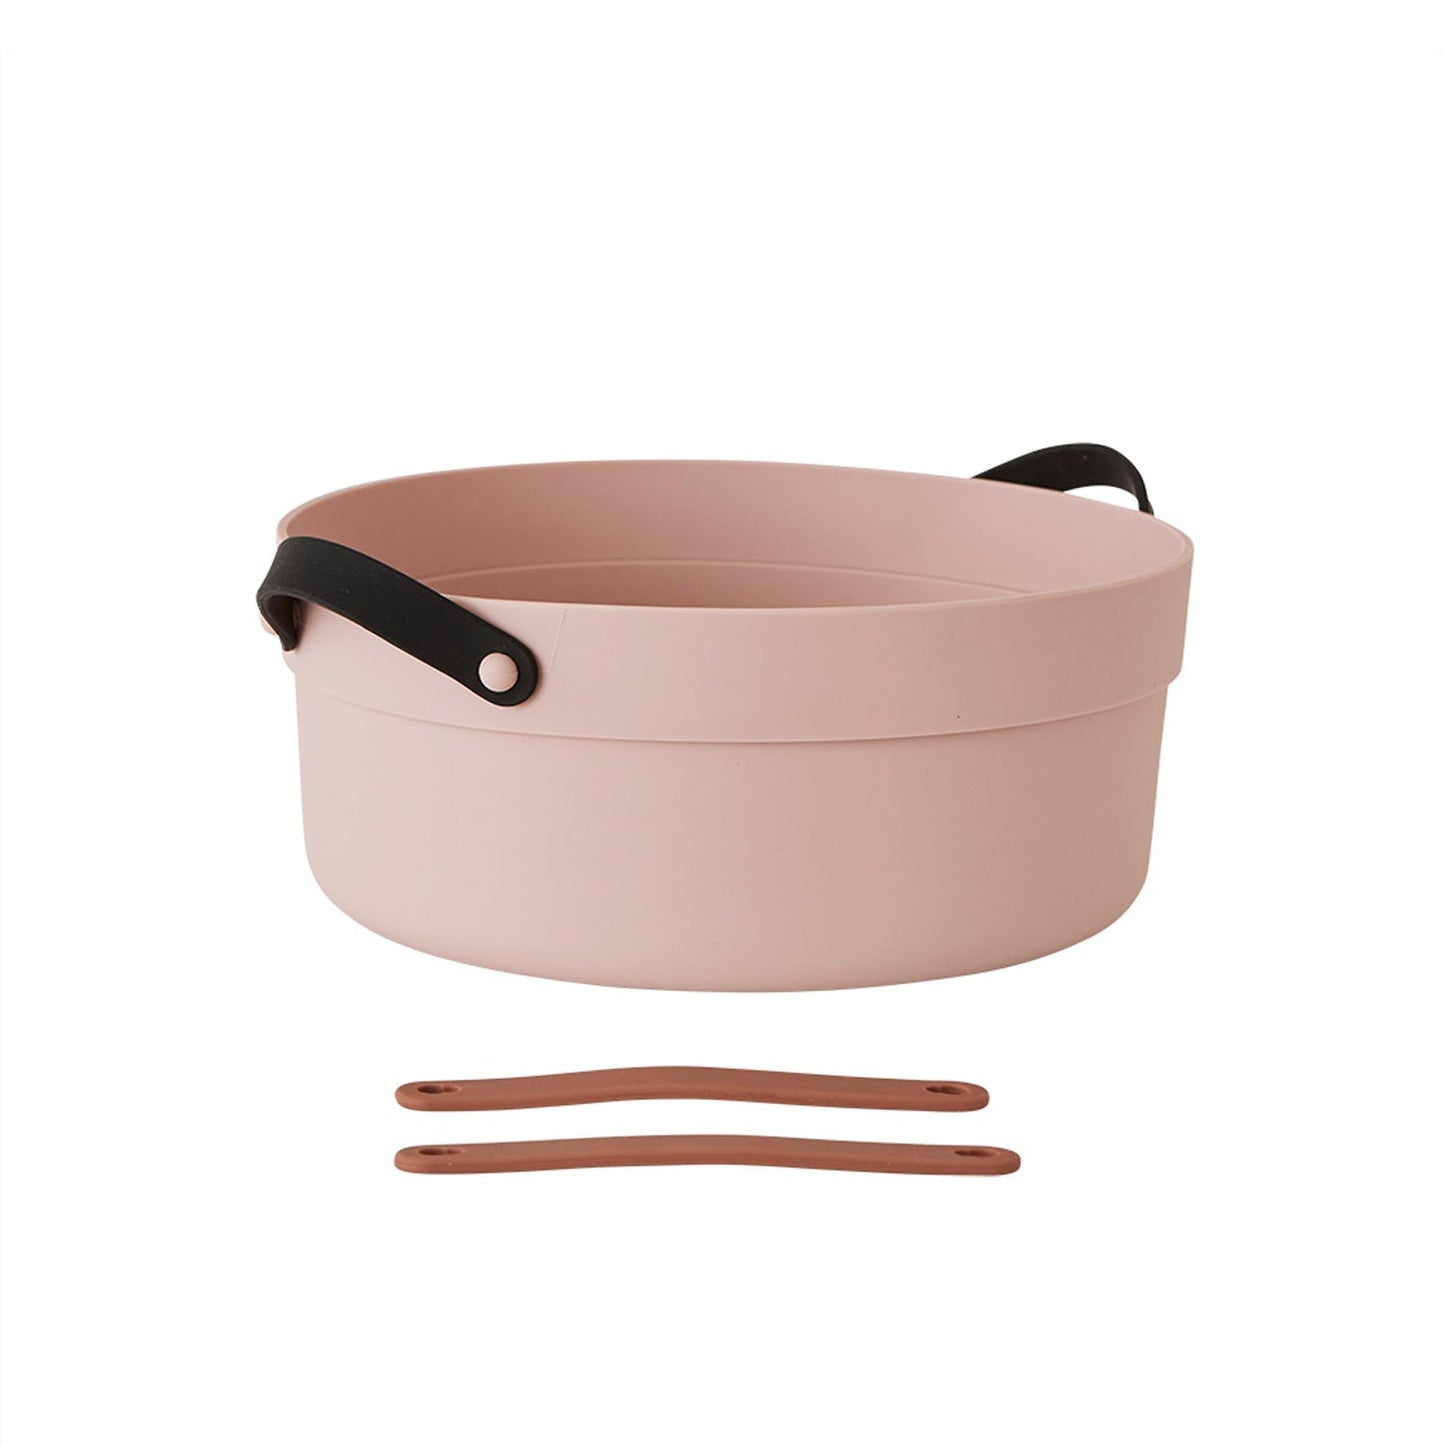 Mio Wash Tub - Rose Kitchen accessories OYOY 